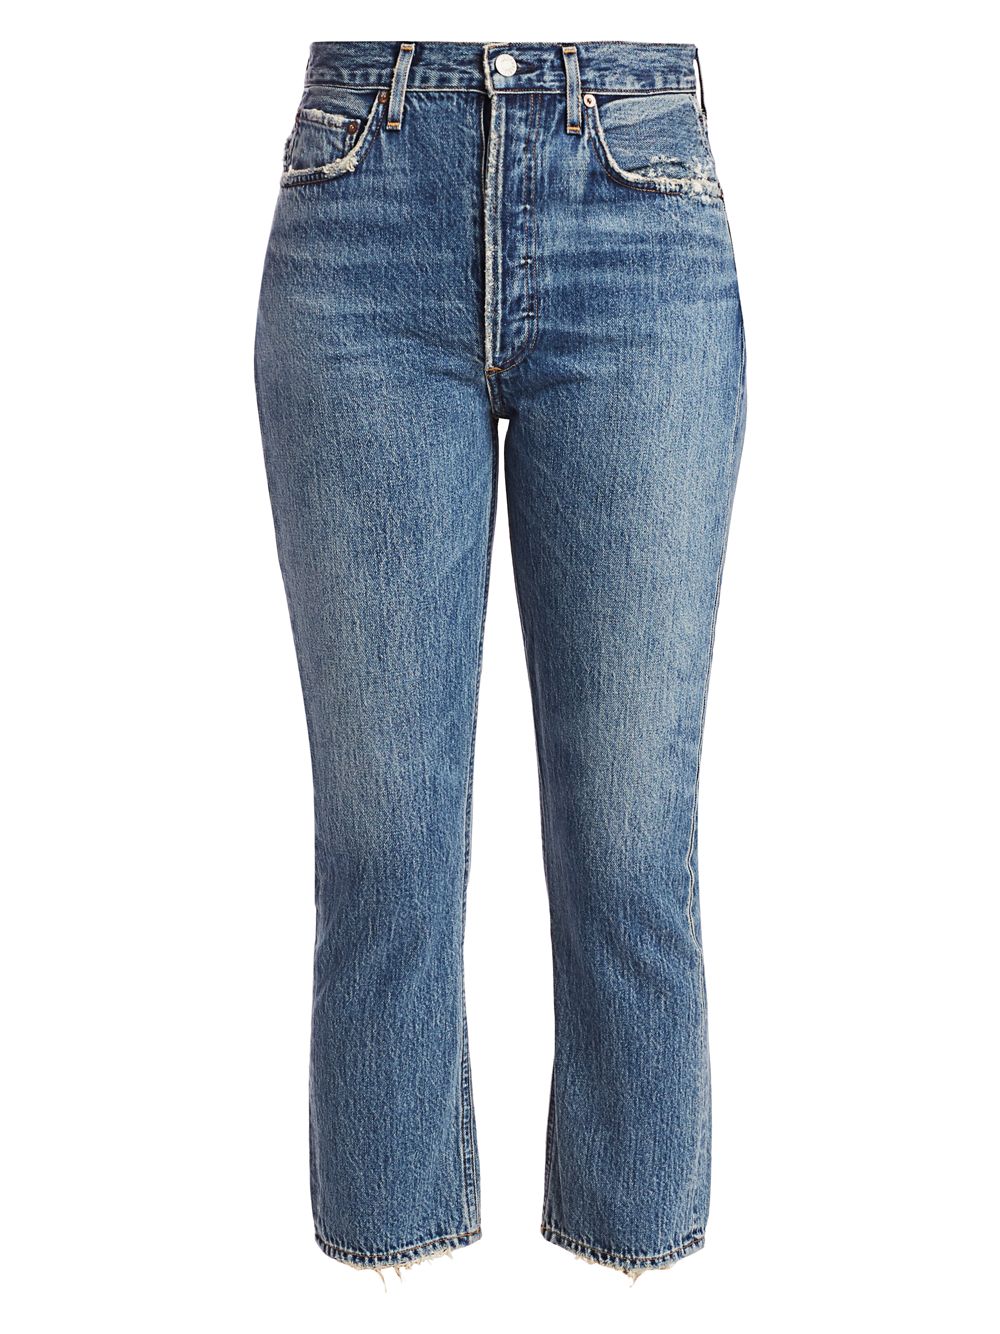 Прямые джинсы до щиколотки со средней посадкой Riley AGOLDE джинсы agolde harper прямые со средней посадкой синий